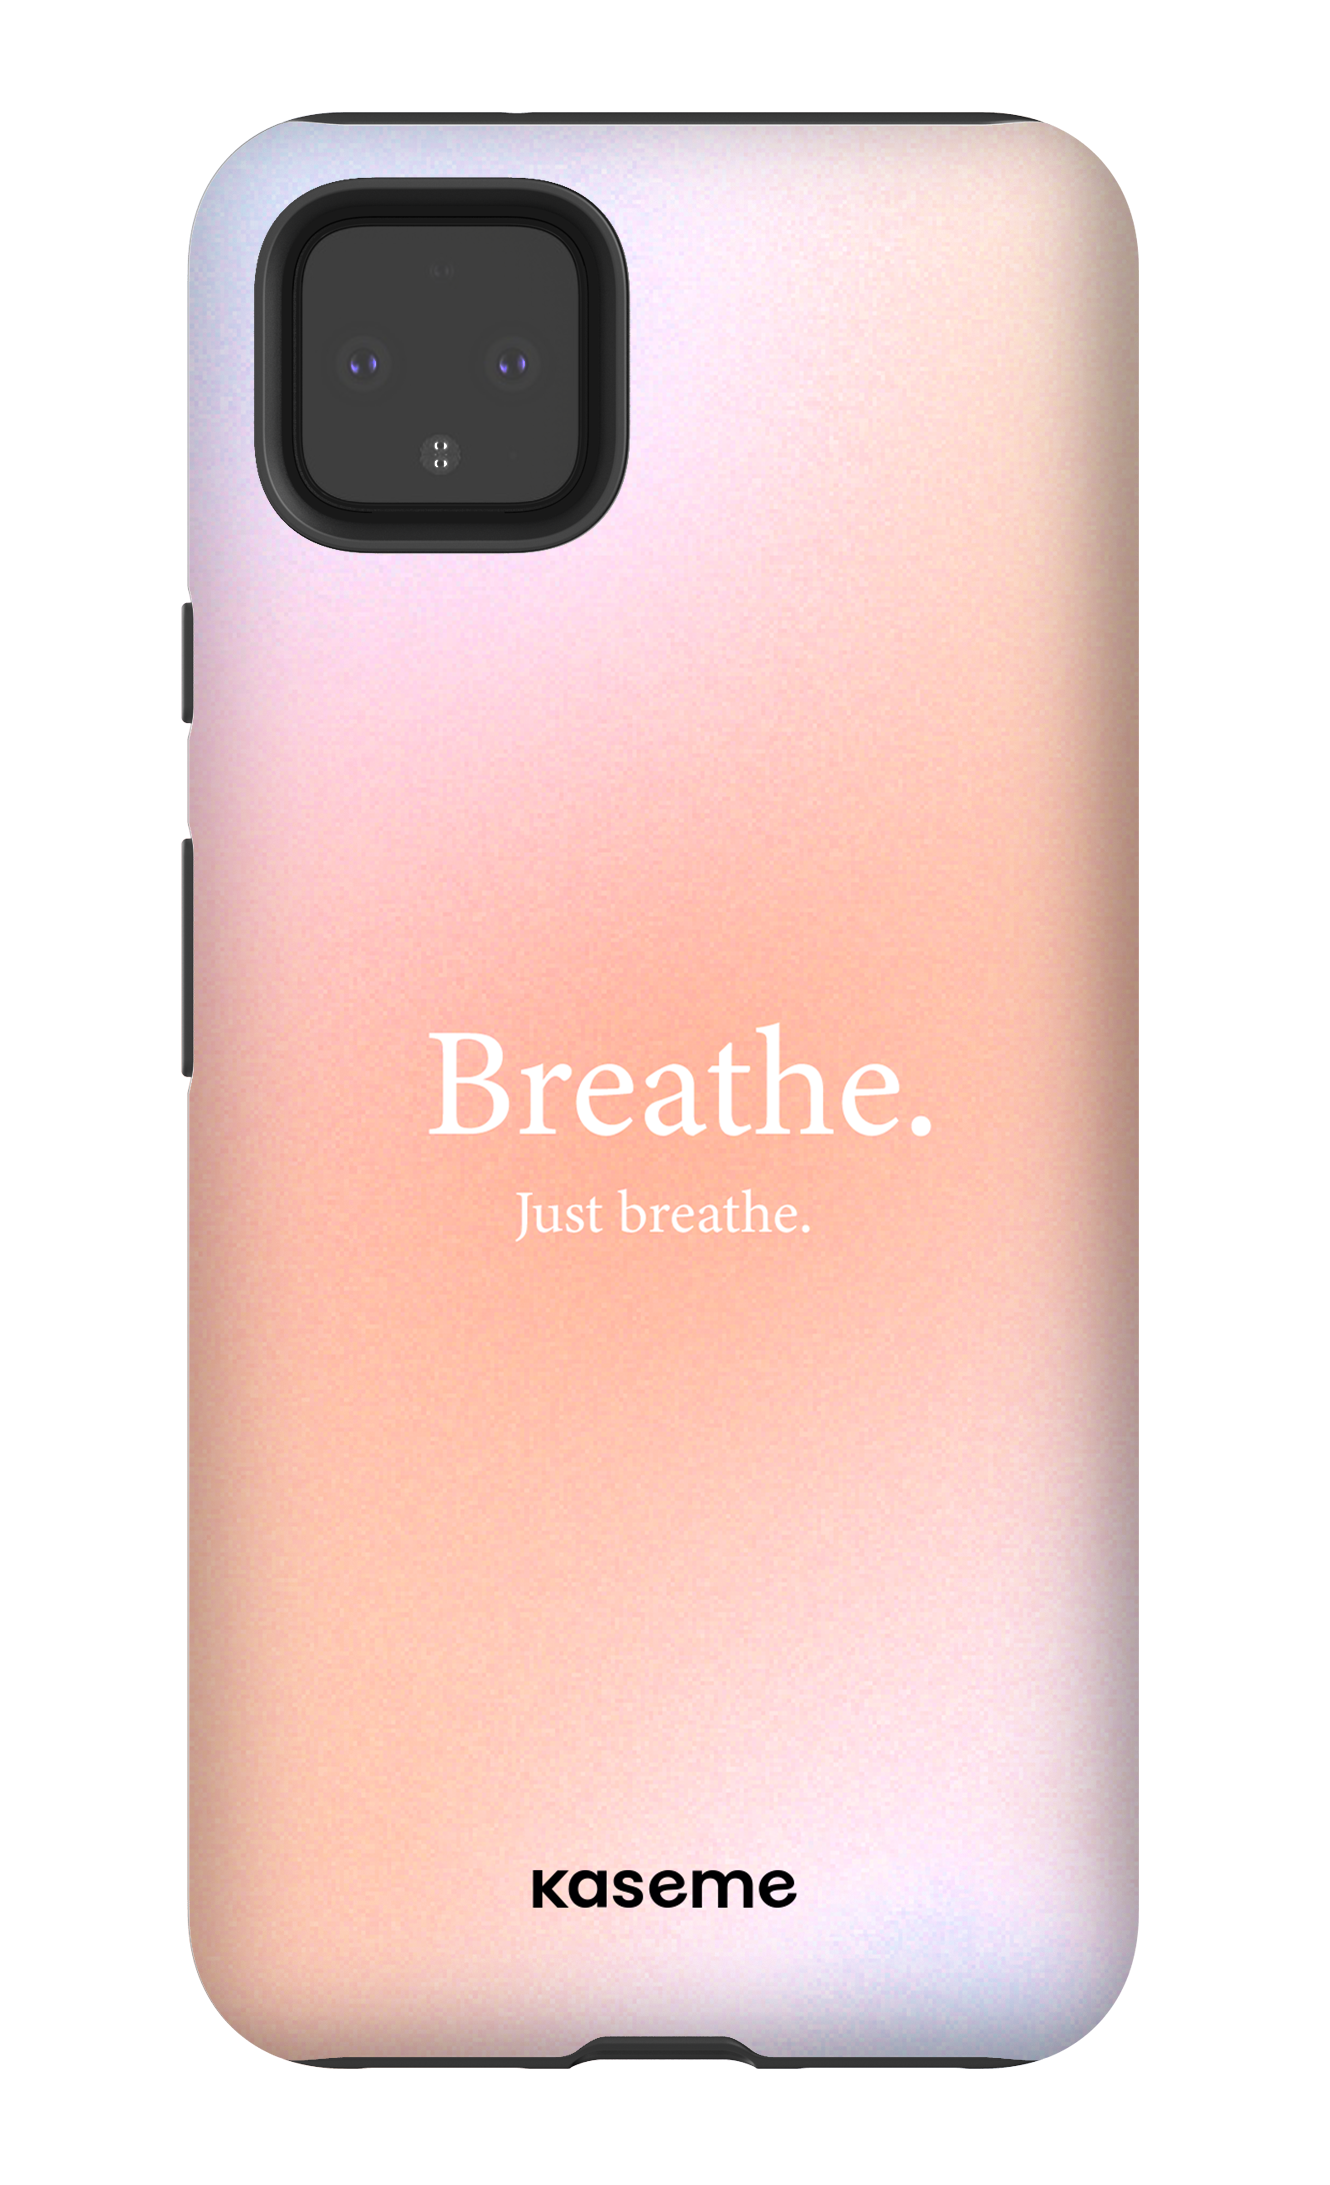 Just breathe - Google Pixel 4 XL